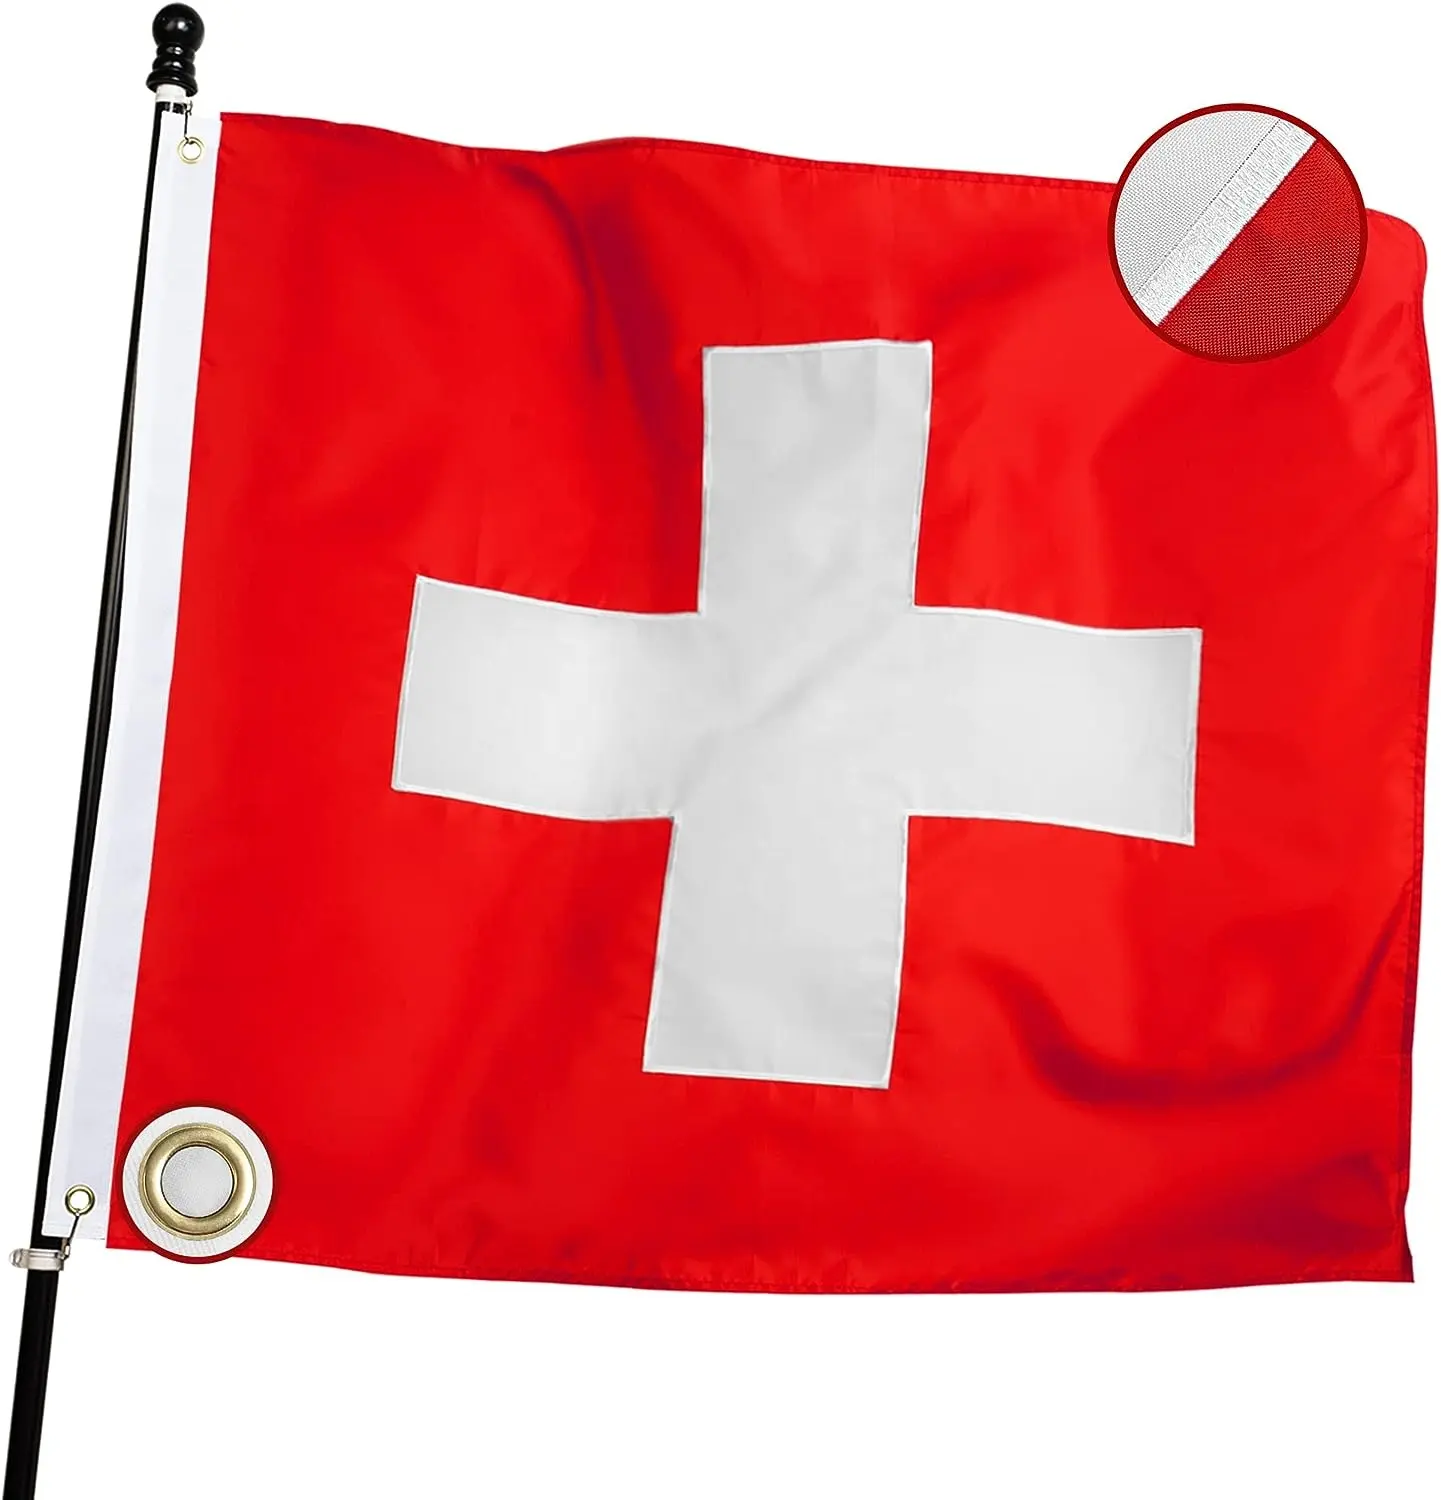 Drapeau d'impression personnalisé brodé imperméable de qualité supérieure en polyester de luxe à l'extérieur du drapeau suisse de 3x3 pieds pour tous les temps difficiles